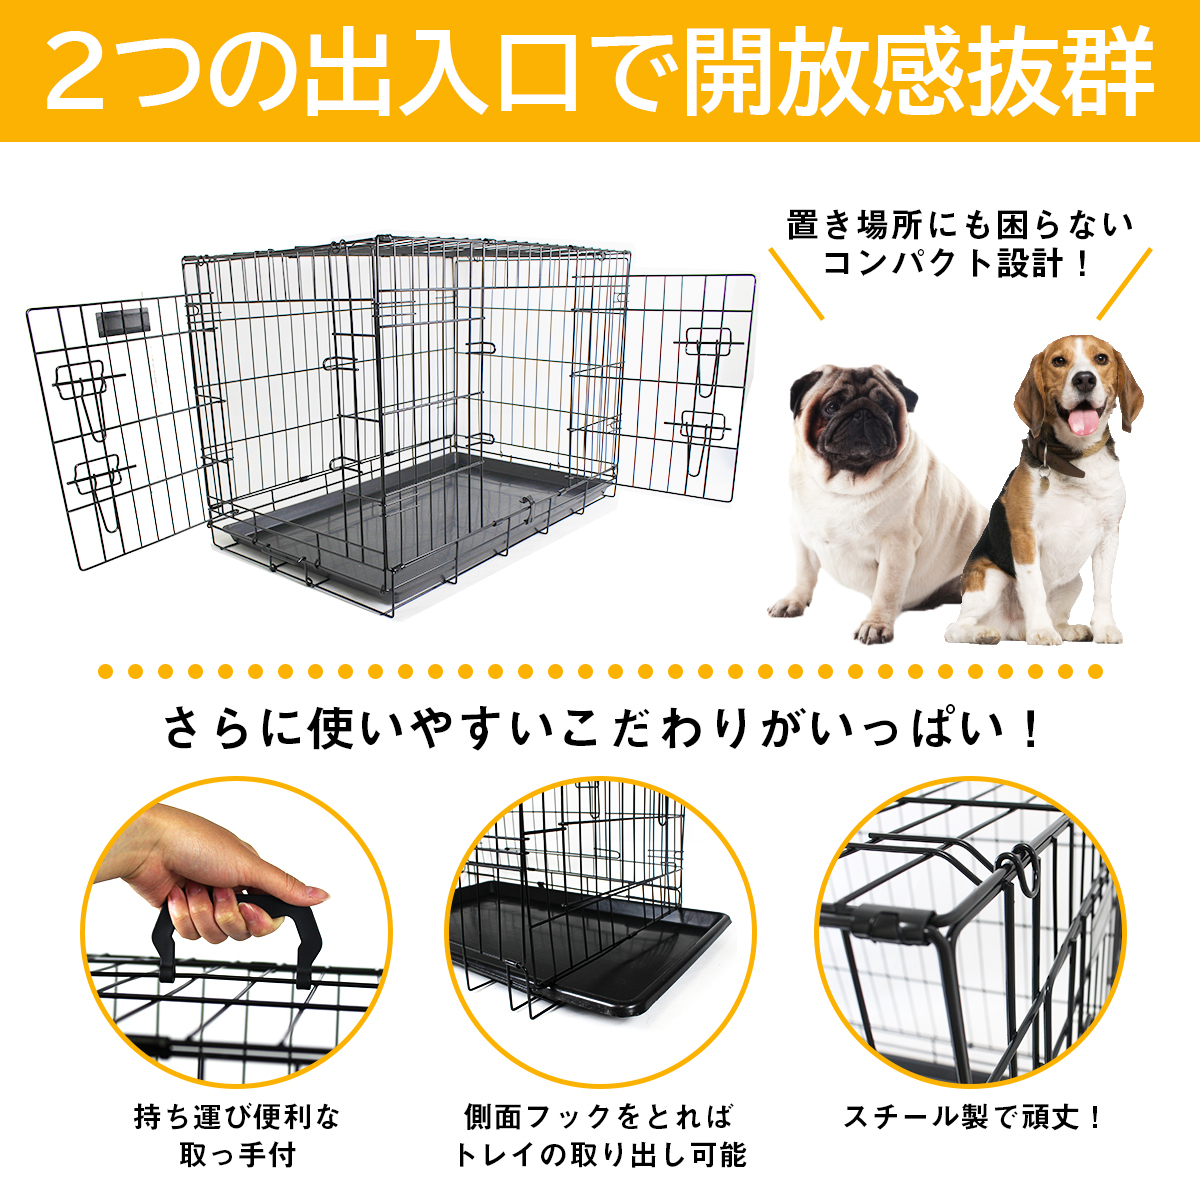  маленький / средний собака домашнее животное клетка сборка простой складной tray имеется маленький размер собака средний собака чихуахуа . собака домашнее животное house Circle мера собачья конура 